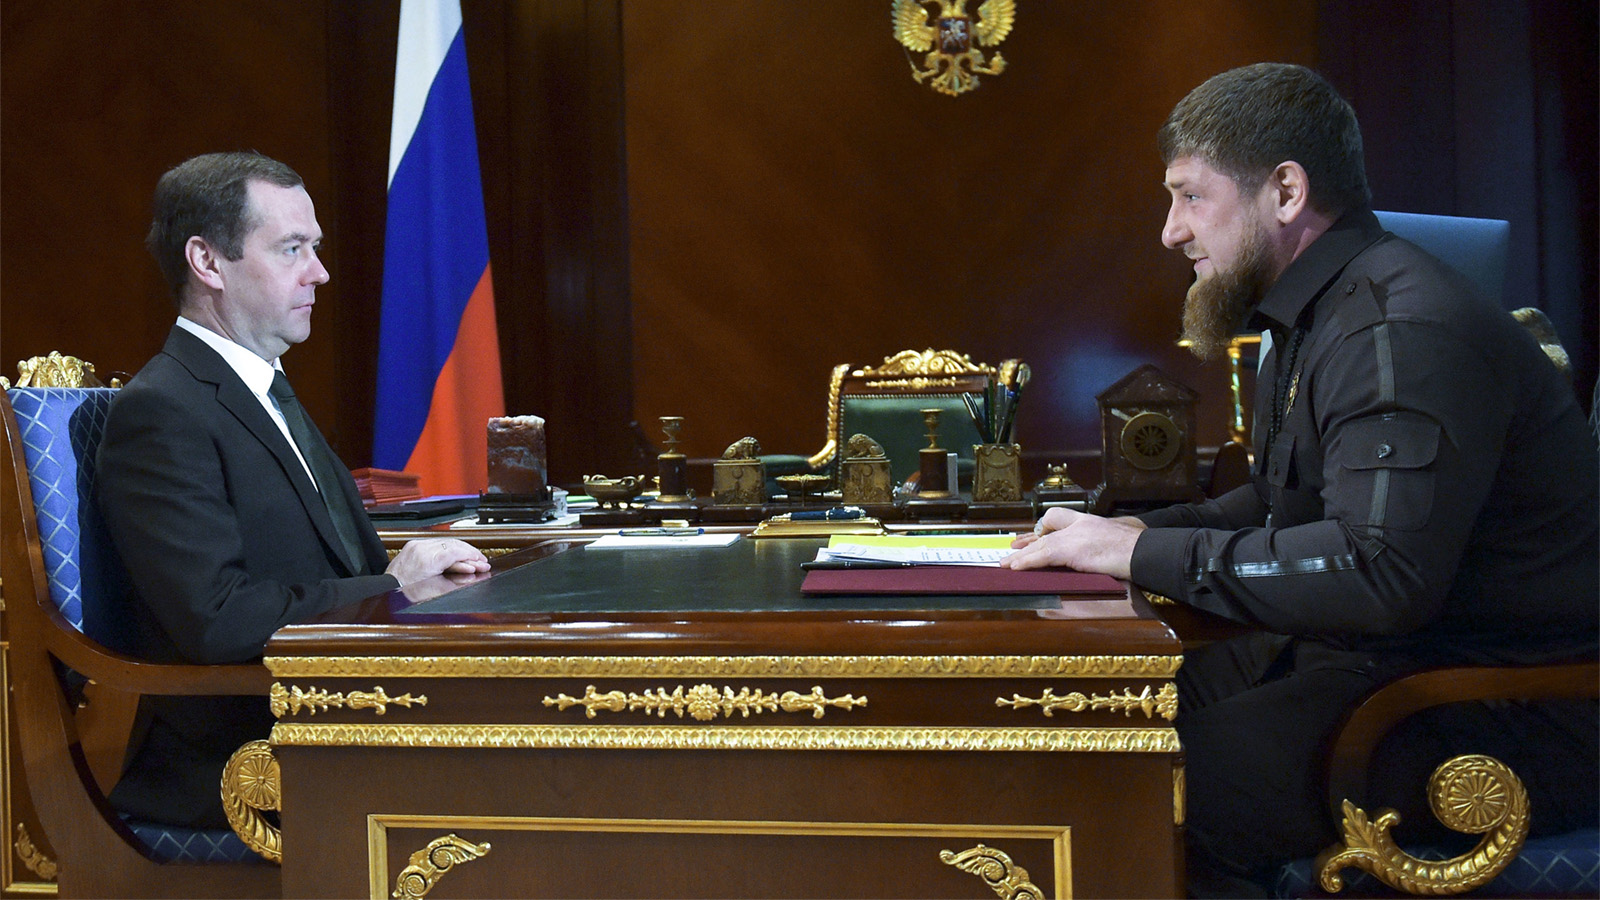 ראש ממשלת רוסיה, דמיטרי מדבדב, בפגישה עם רמזן קאדירוב, המהניג הצ'צ'ני (צילום ארכיון: Alexander Astafyev, Sputnik, Government Pool Photo via AP)